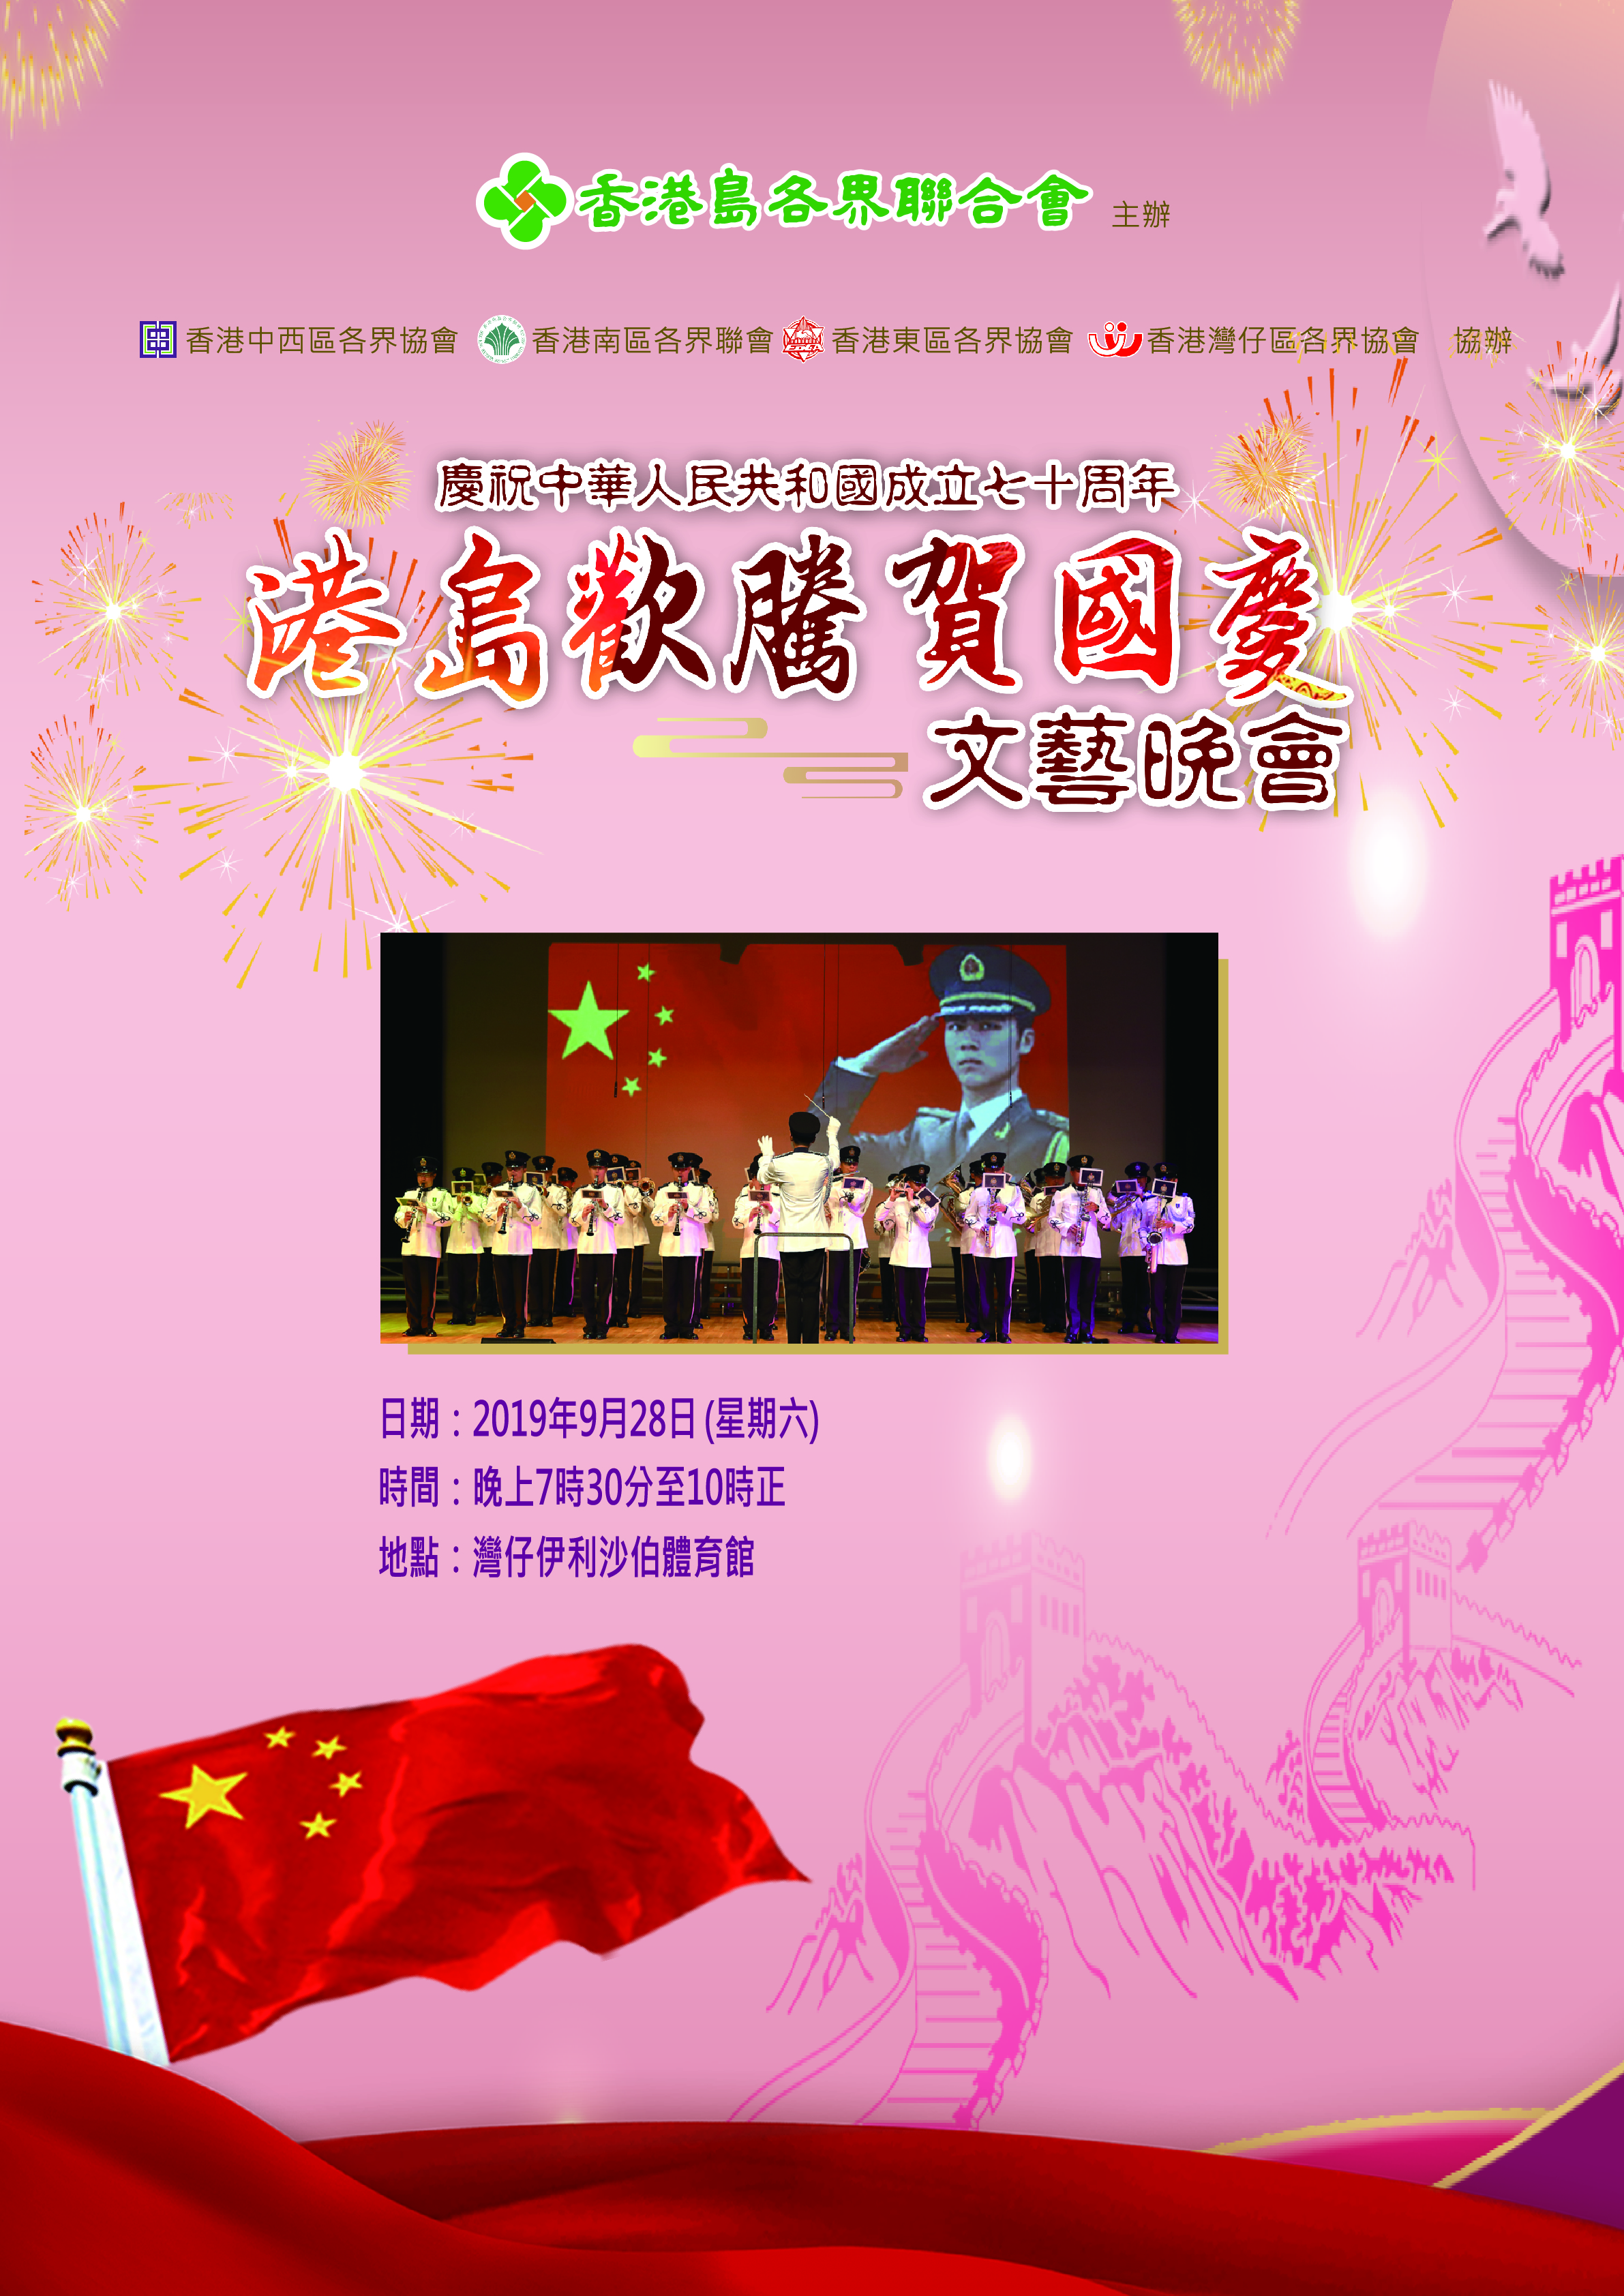 慶祝中華人民共和國成立七十周年 港島歡騰賀國慶文藝晚會